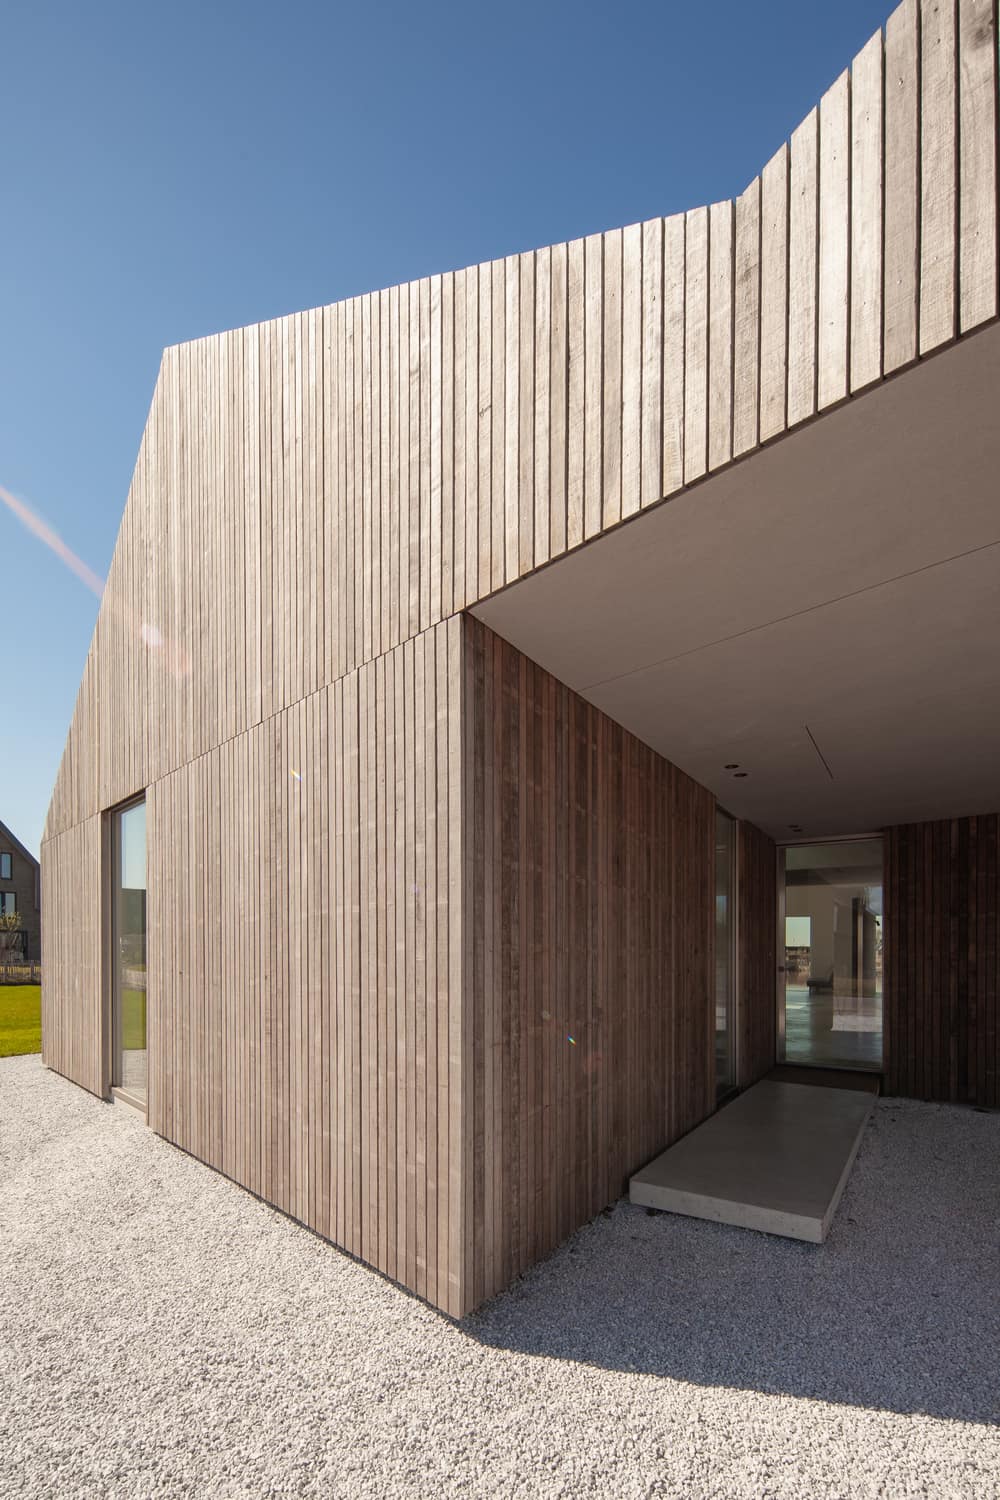 K2 House by Francois Verhoeven Architects